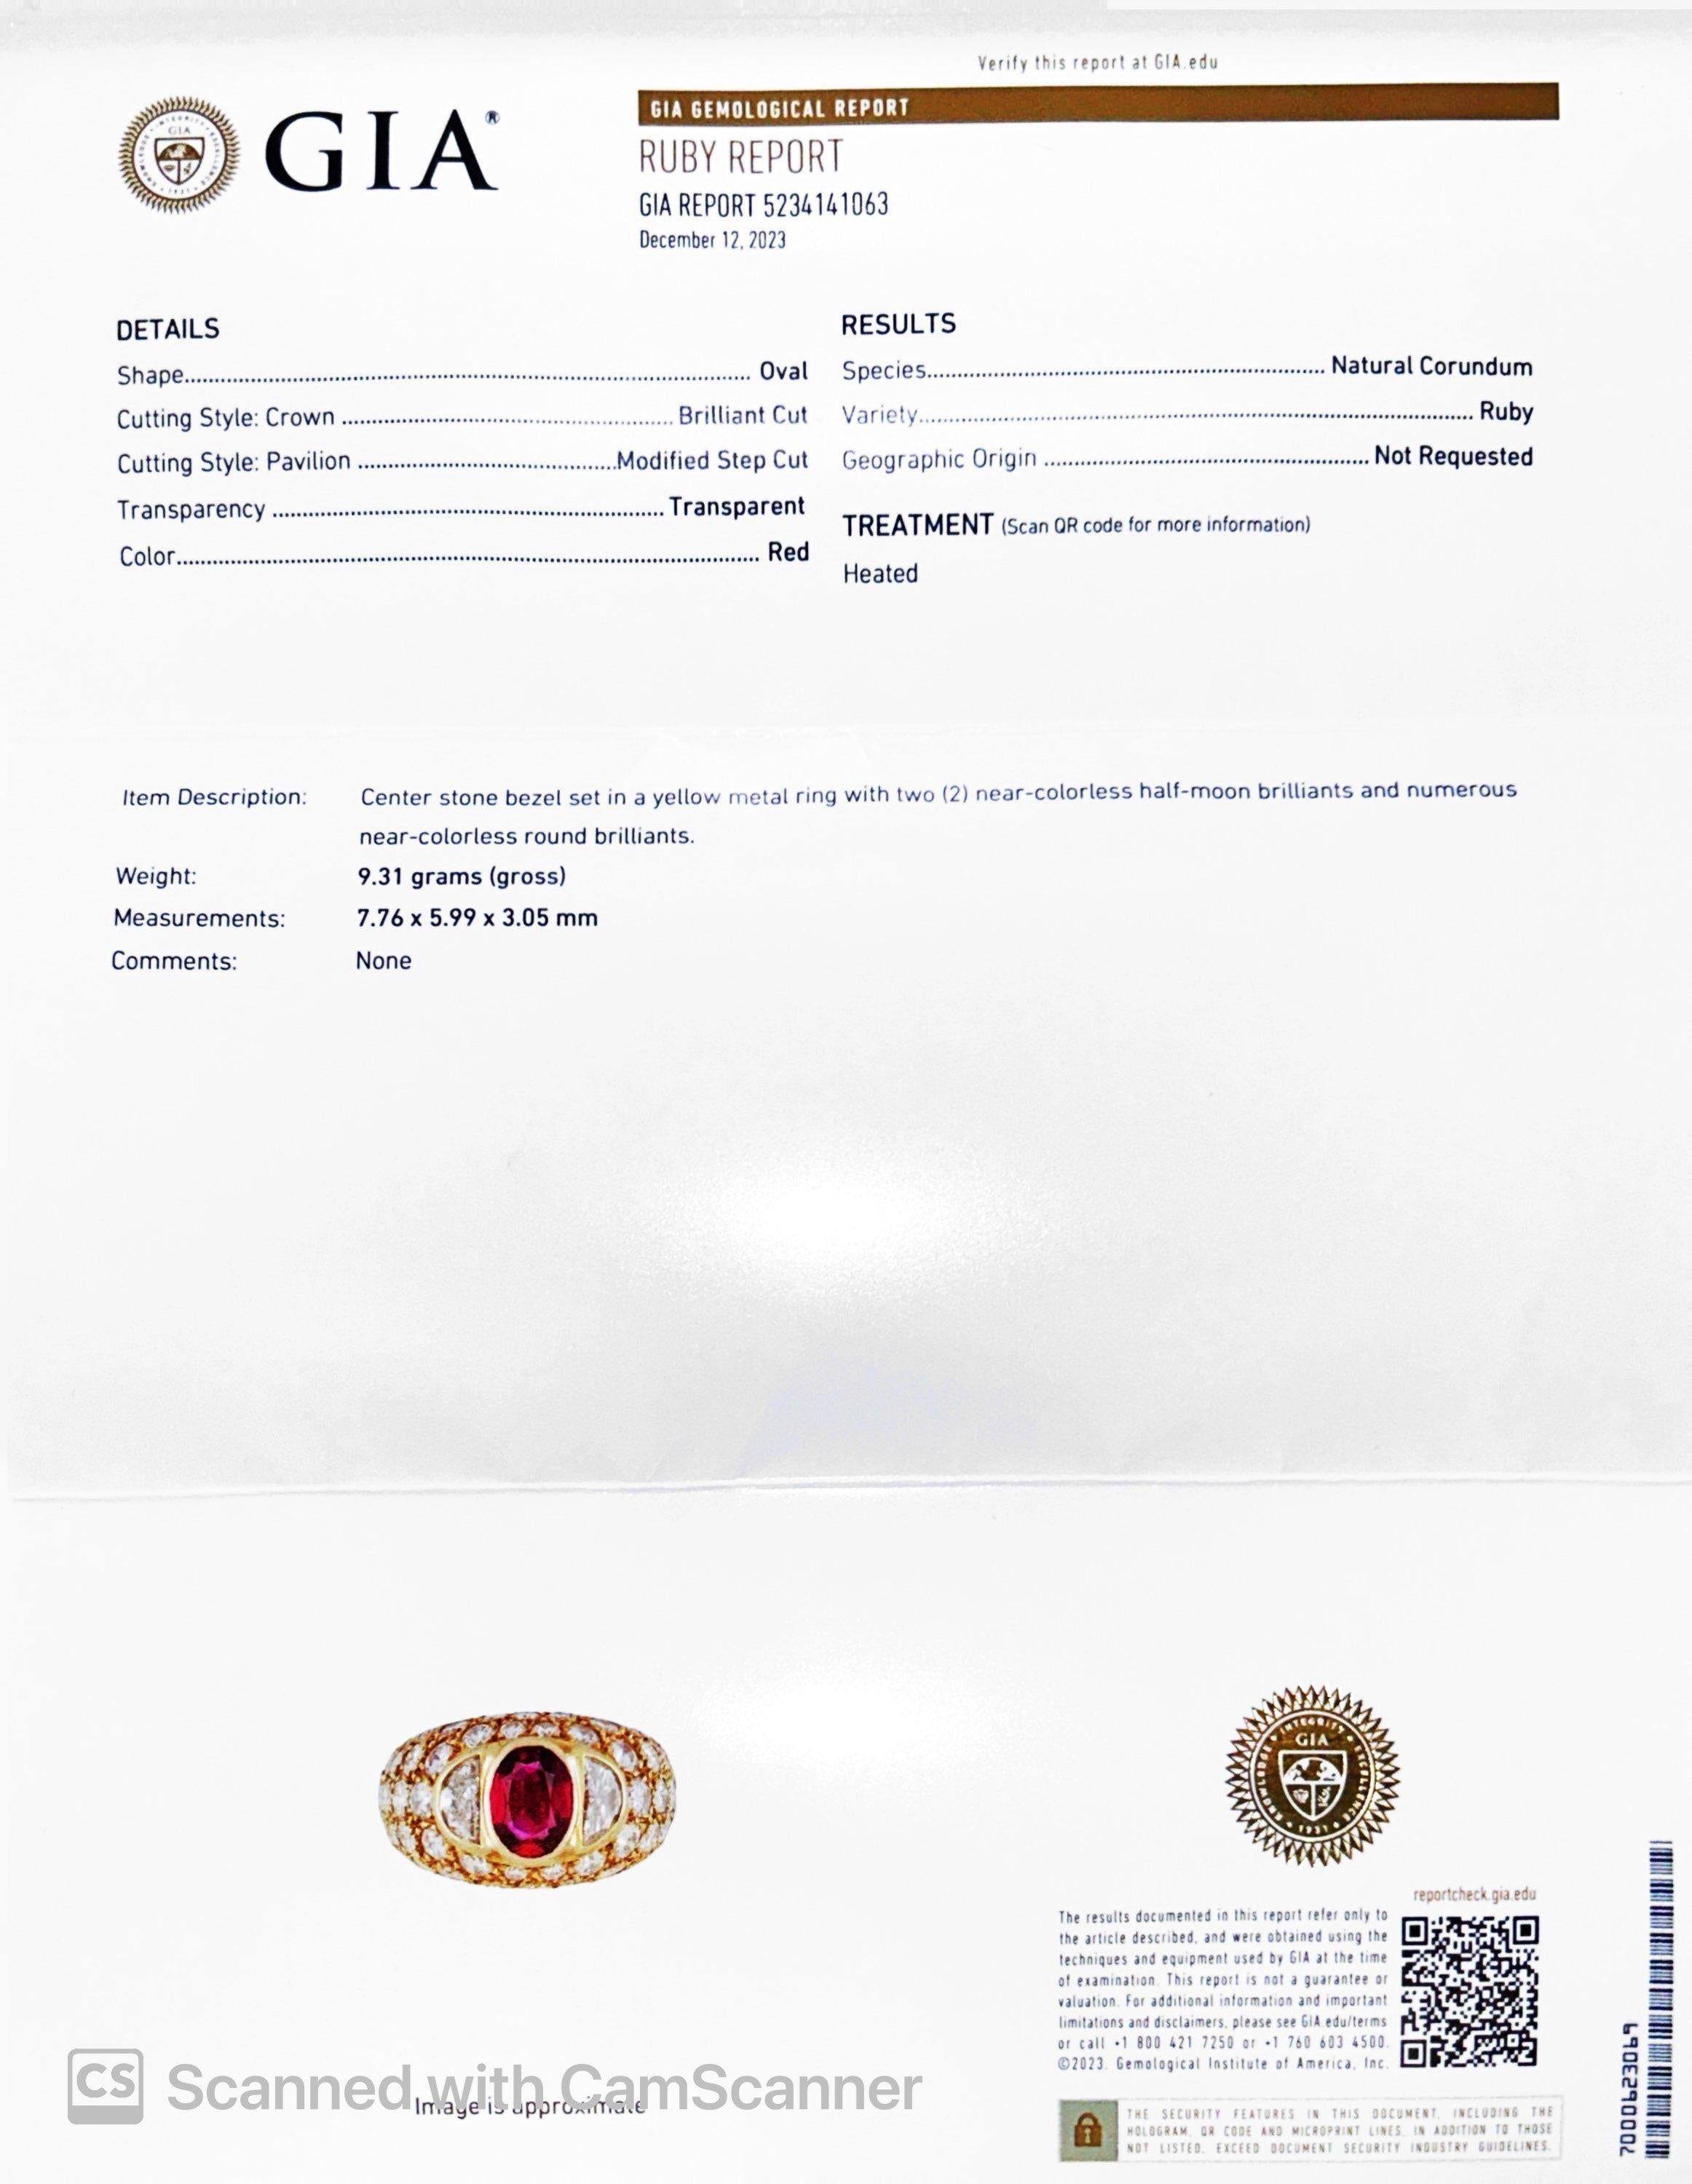 Artikel-Details:
Ringgröße: 6
Metall Typ: 18K Gelbgold [Punziert und geprüft]
Gewicht: 9,3 Gramm

Rubin Details: Natürlicher Rubin, erhitzt, rot, 2,00ct, mit GIA-Bericht#5234141063

Diamant-Details: 2,50ct Gesamtgewicht, Farbe F, Reinheit VS,